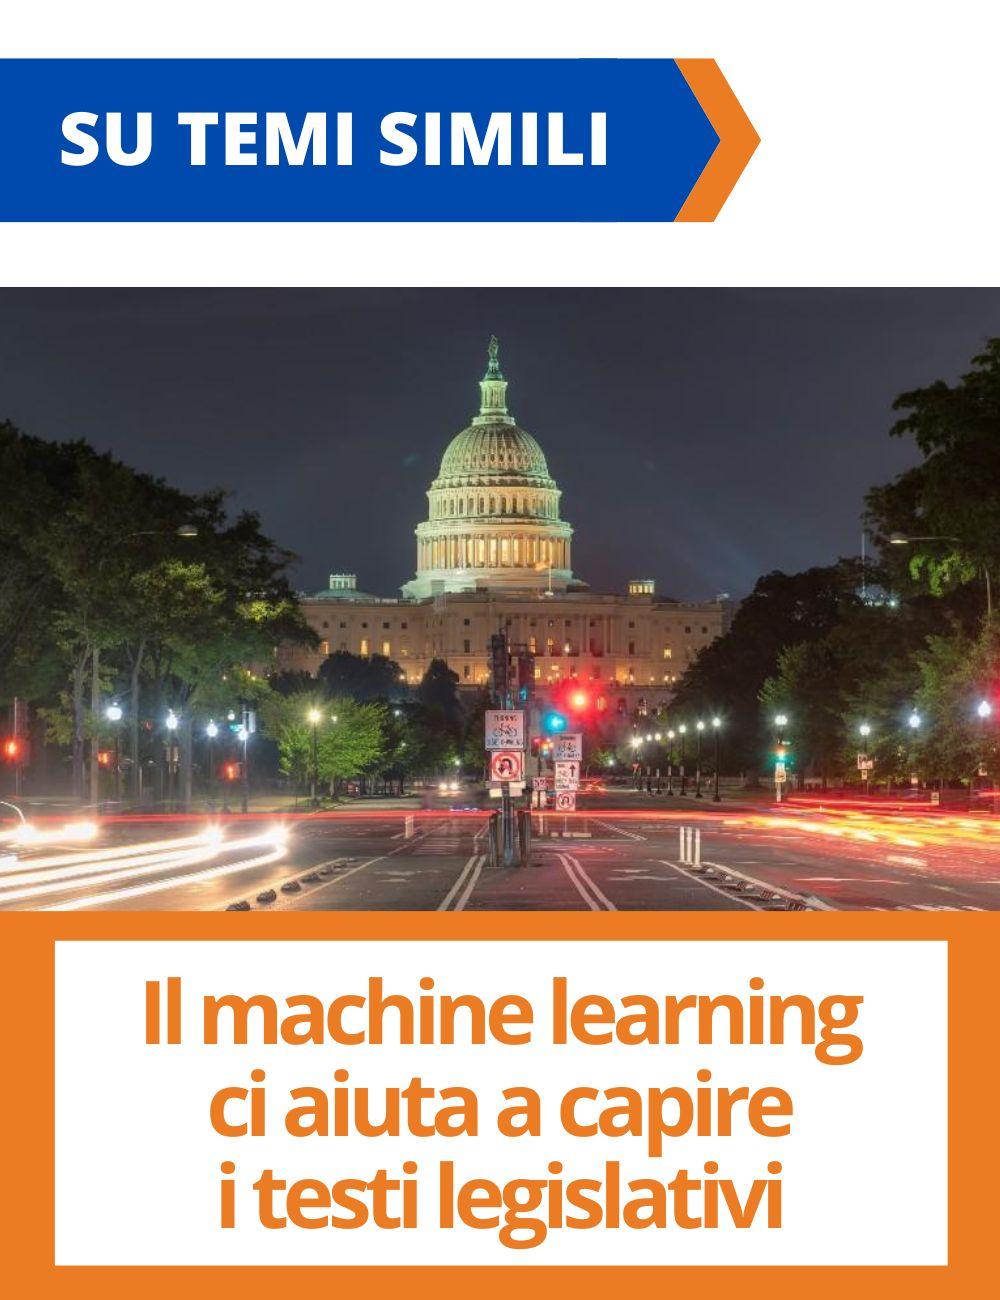 Immagine con link ad articoli su temi simili. L'immagine del Capitol Building di Washington D.C. rimanda all'articolo intitolato: Il machine learning ci aiuta a capire i testi legislativi